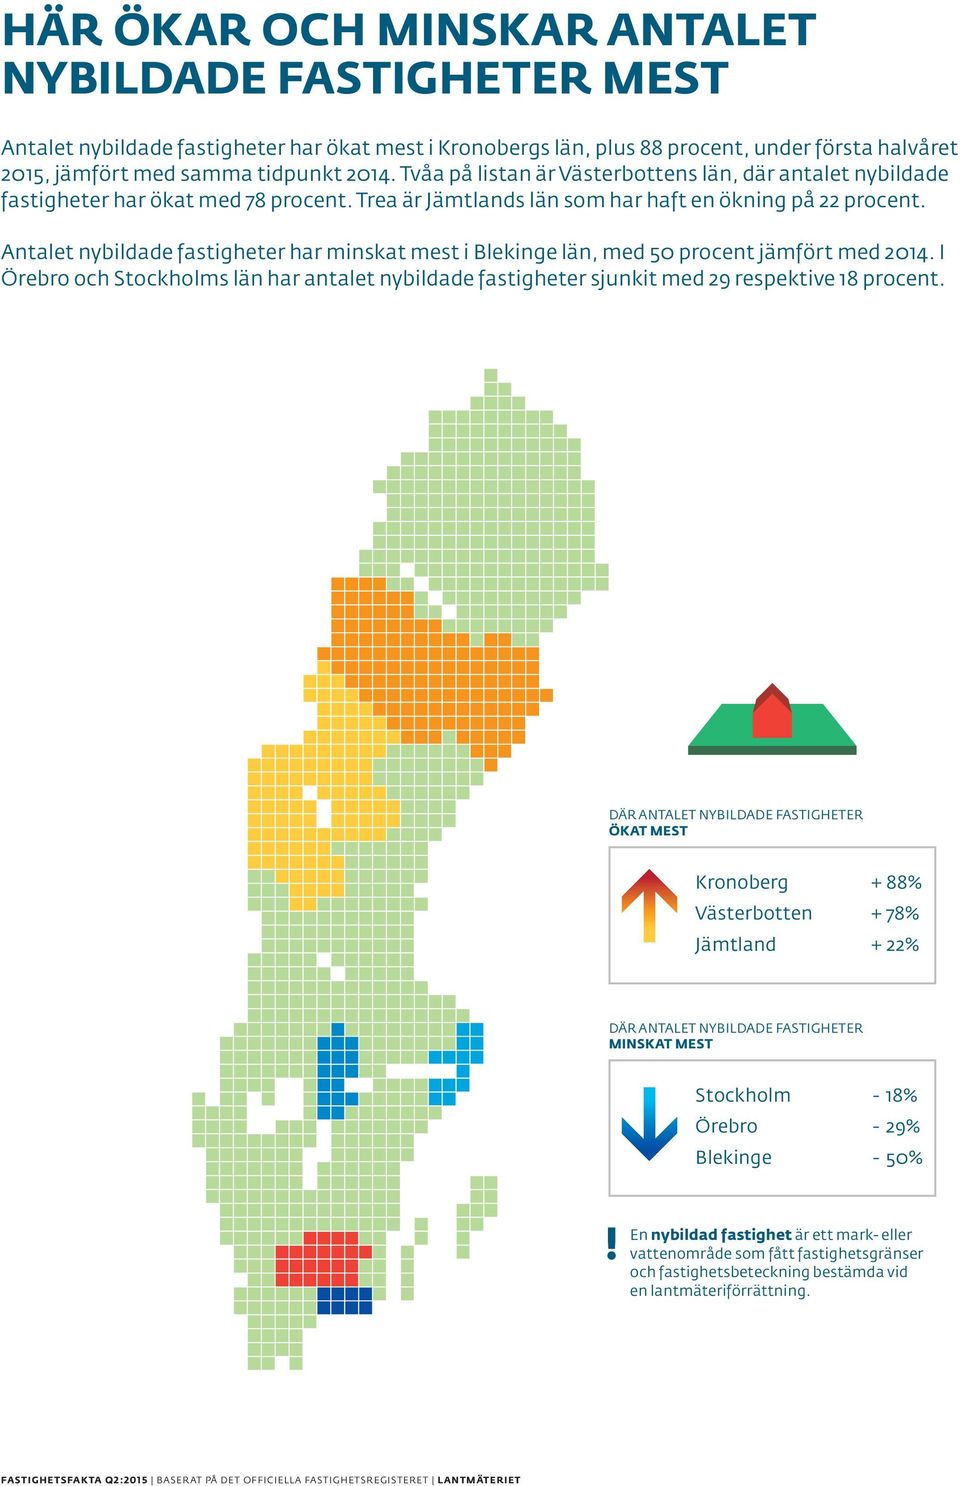 FASTIGHETER Trea är Jämtlands MEST län som har haft en ökning på 22 procent. Antalet nybildade fastigheter har minskat mest i Blekinge län, med 50 procent jämfört med 2014.